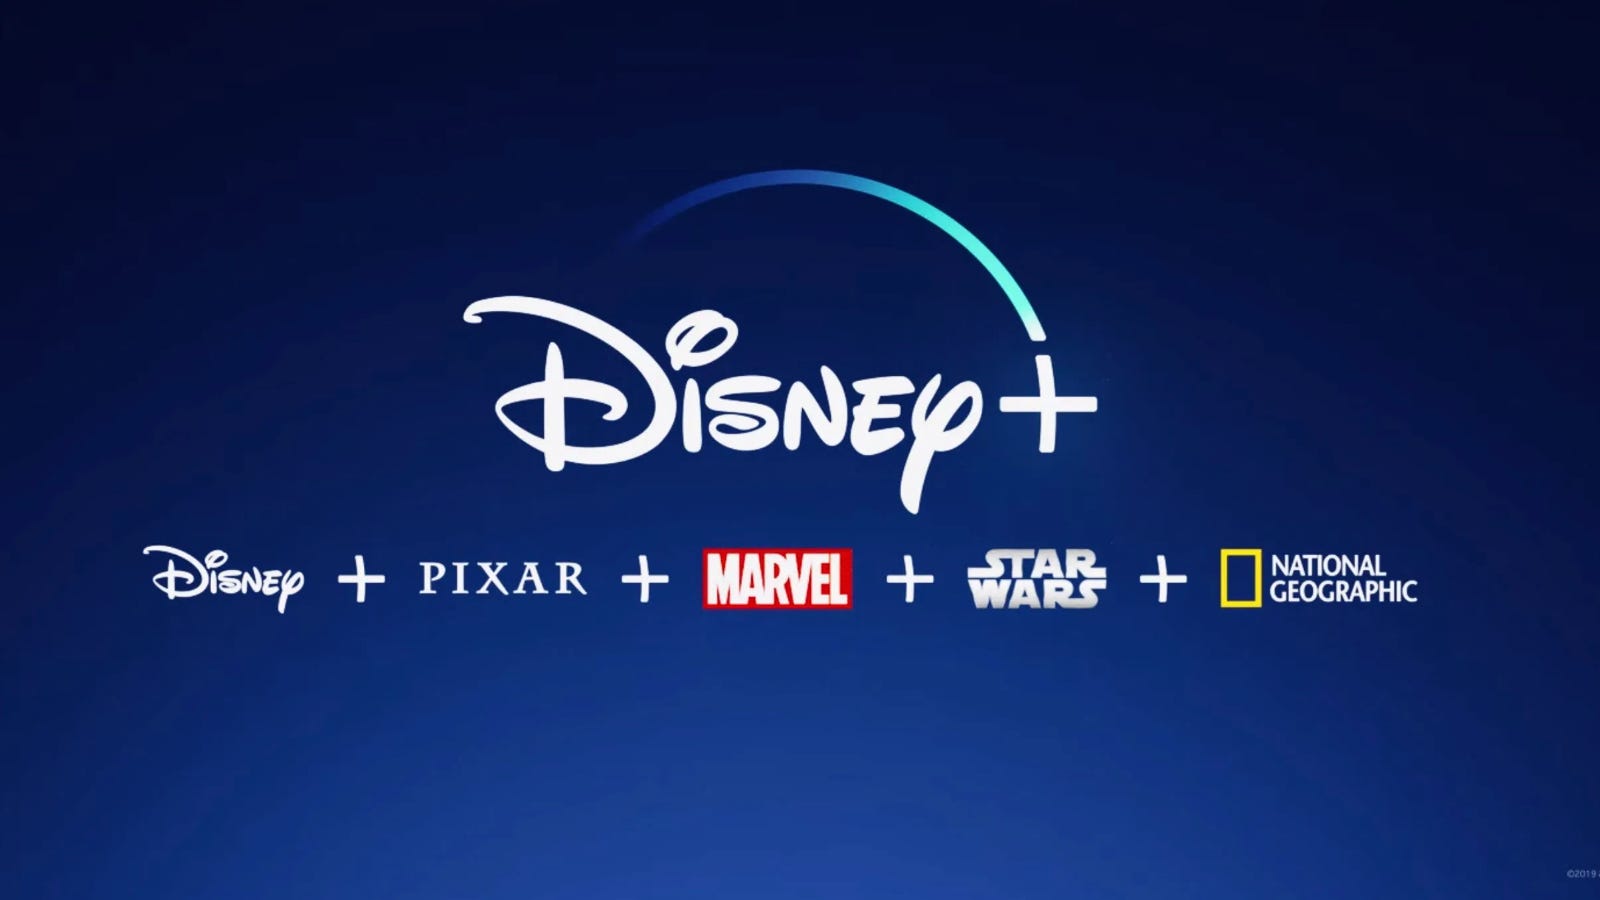 Disney + Quảng cáo trên gradient màu xanh lam.